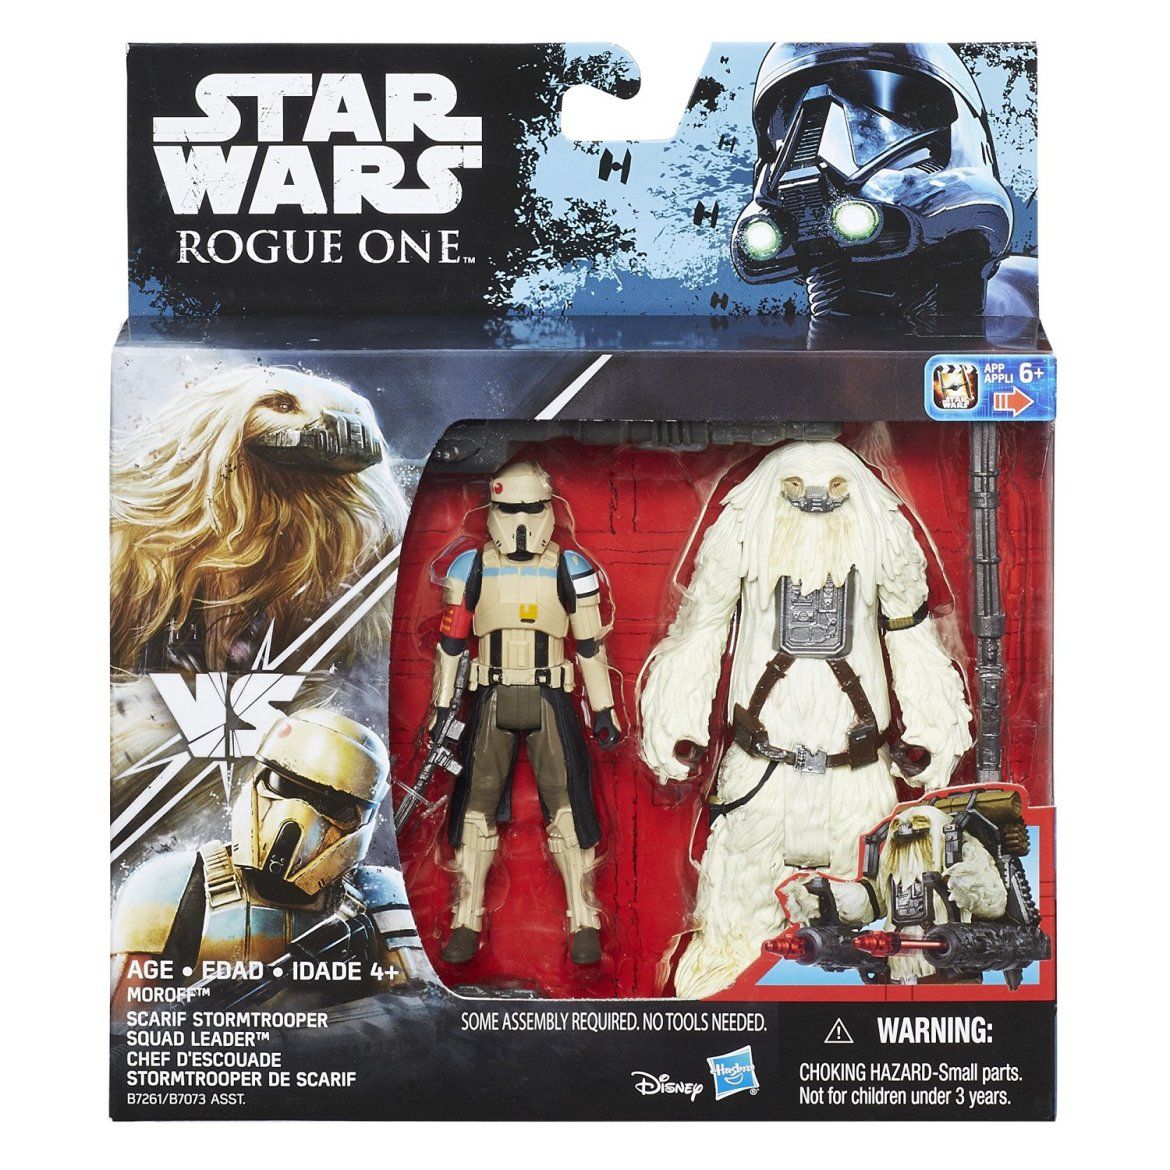 Rogue One Star Wars Merchandise 2